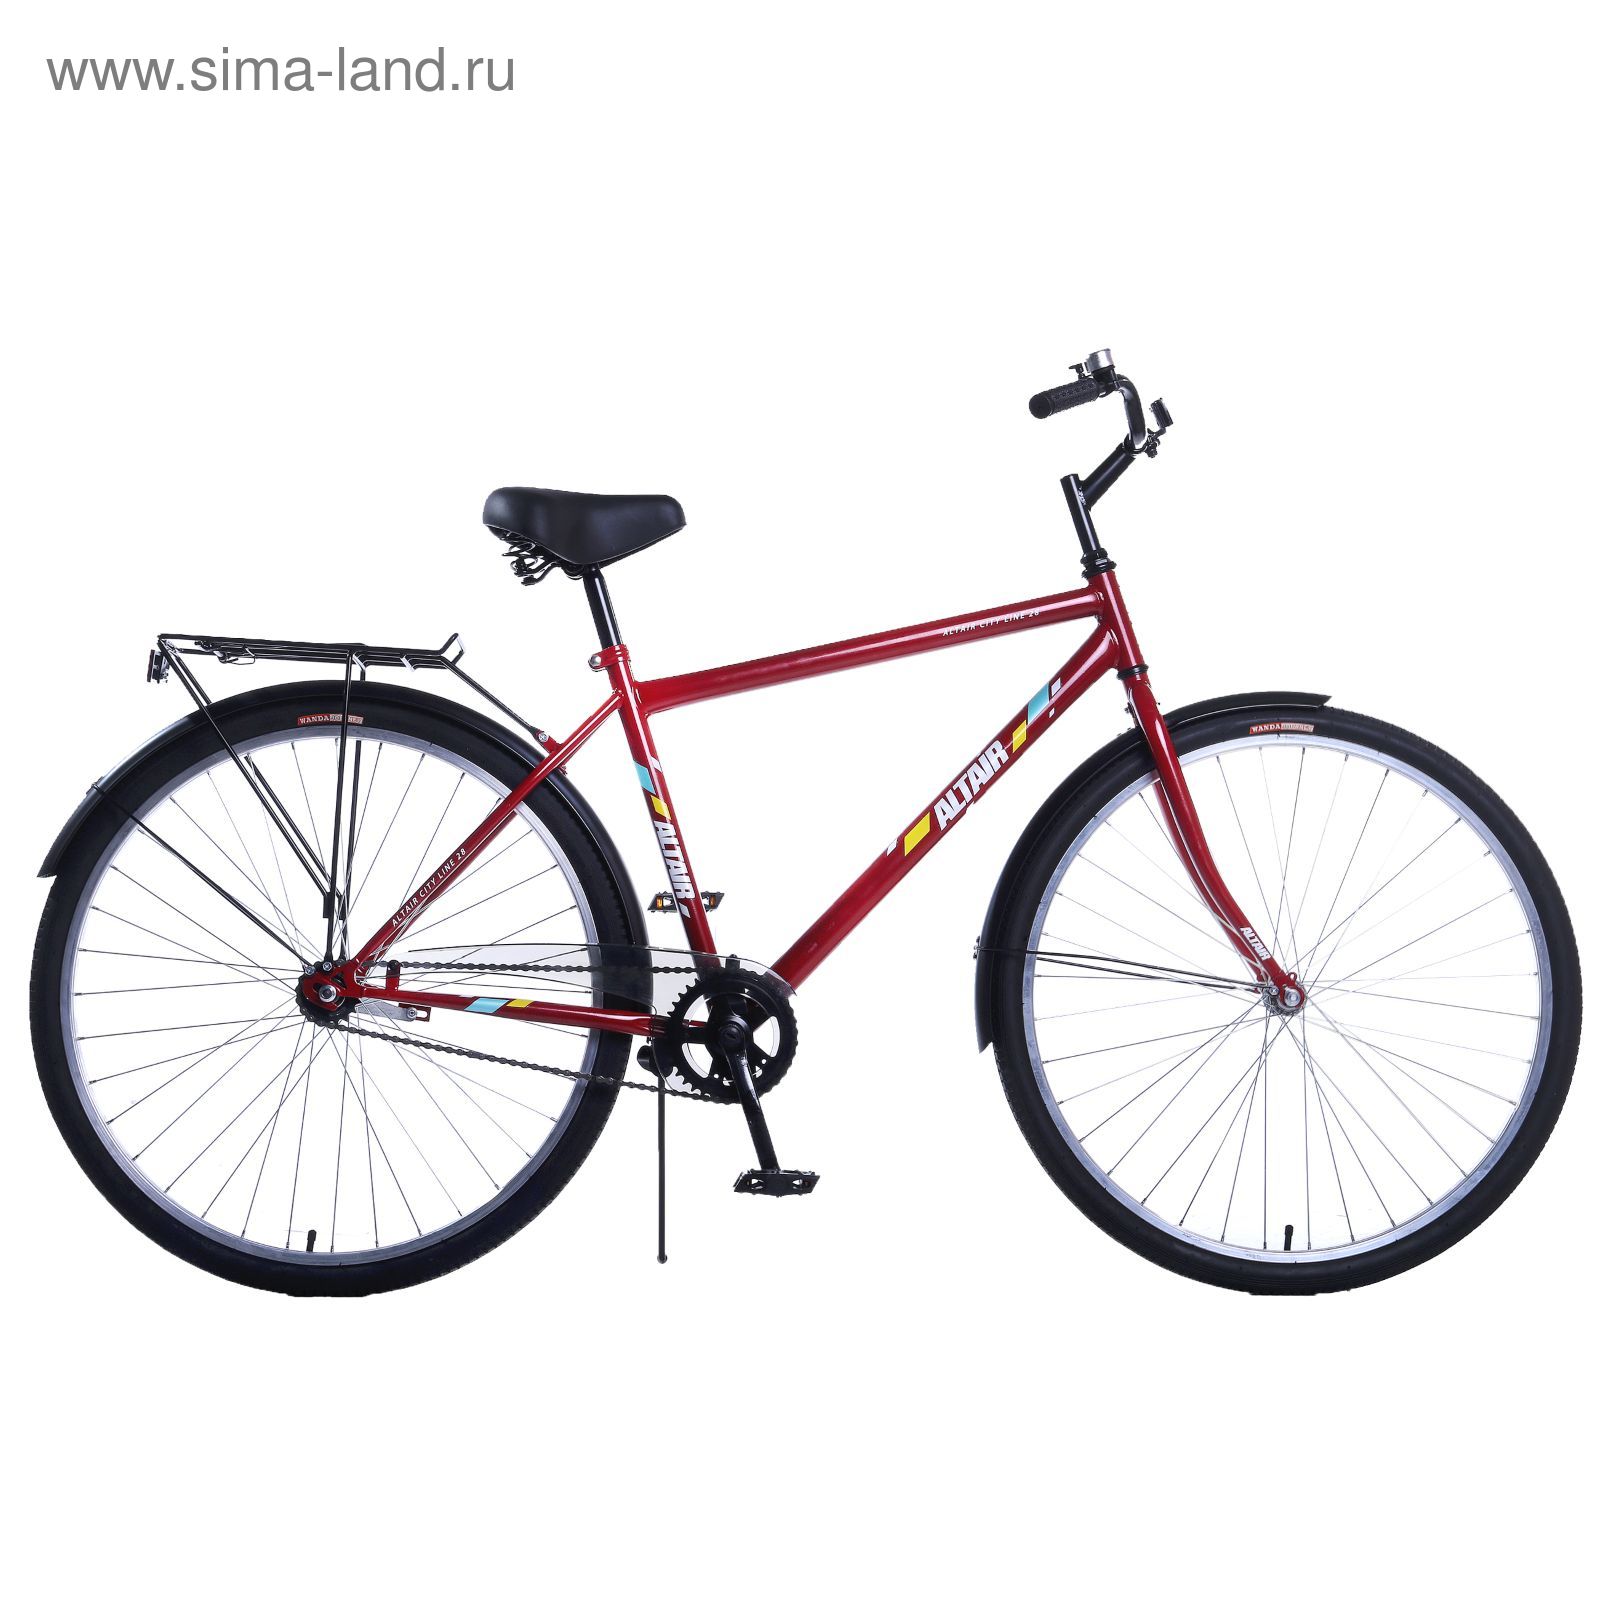 Где Купить Недорогой Велосипед В Казани